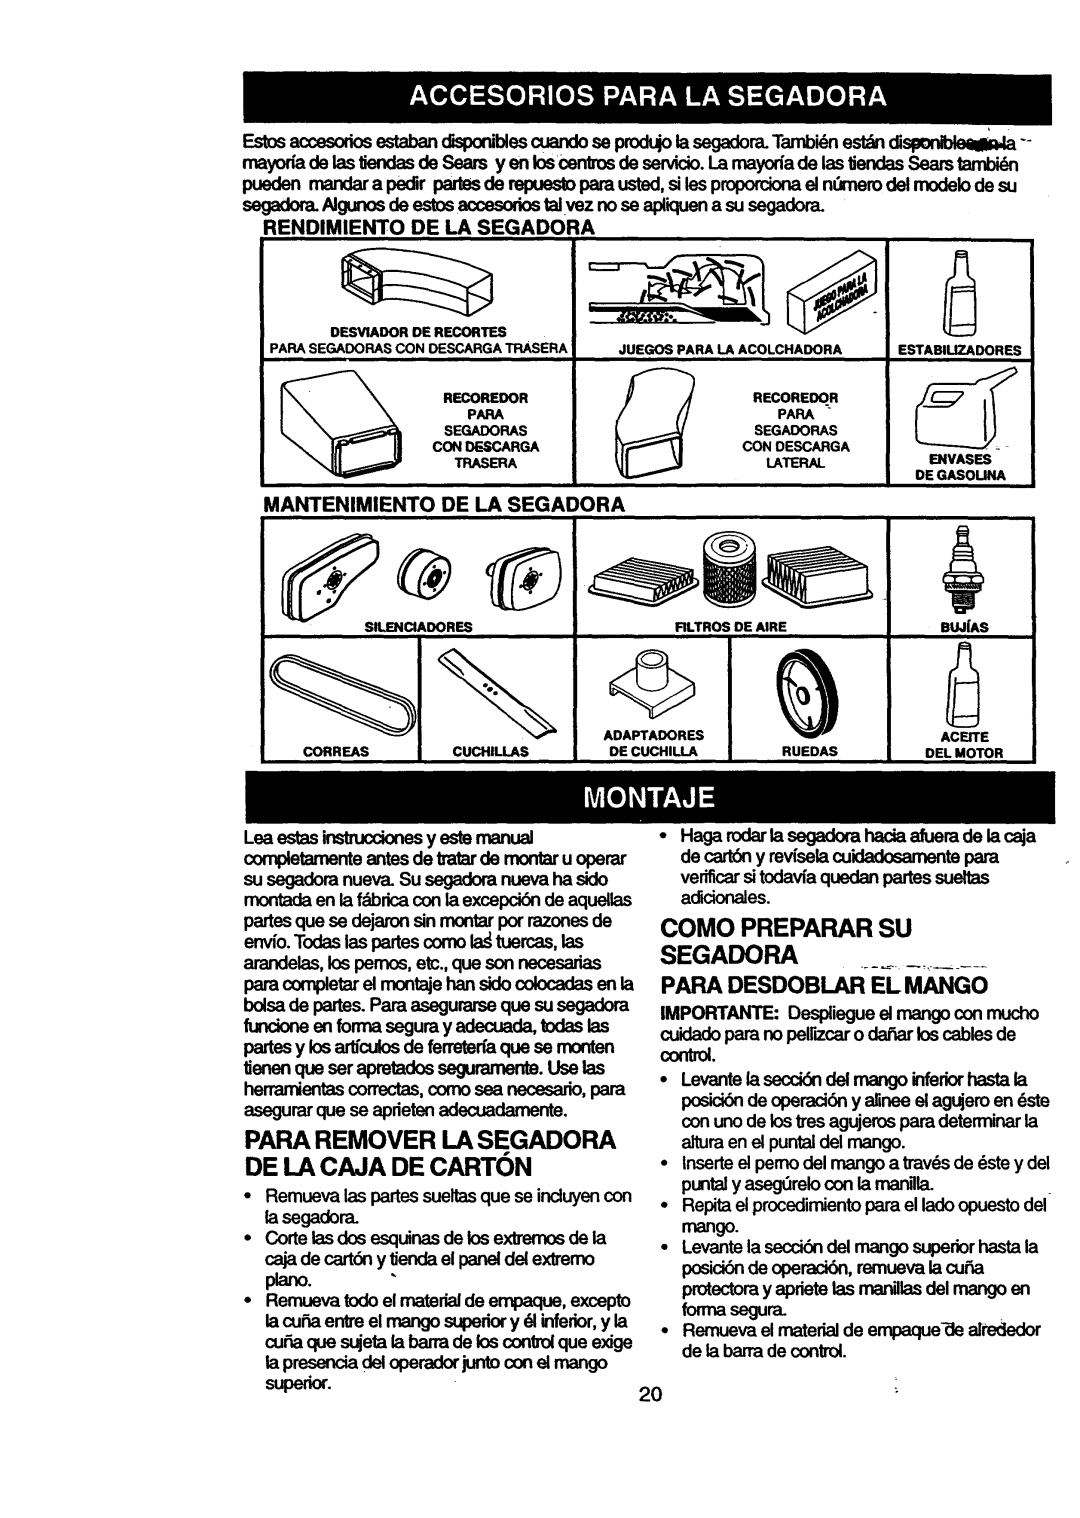 Craftsman 917.377631 De La Caja De Carton, Para Remover La Segadora, Como Preparar Su Segadora Para Oesdoblar E-Lm_Go 